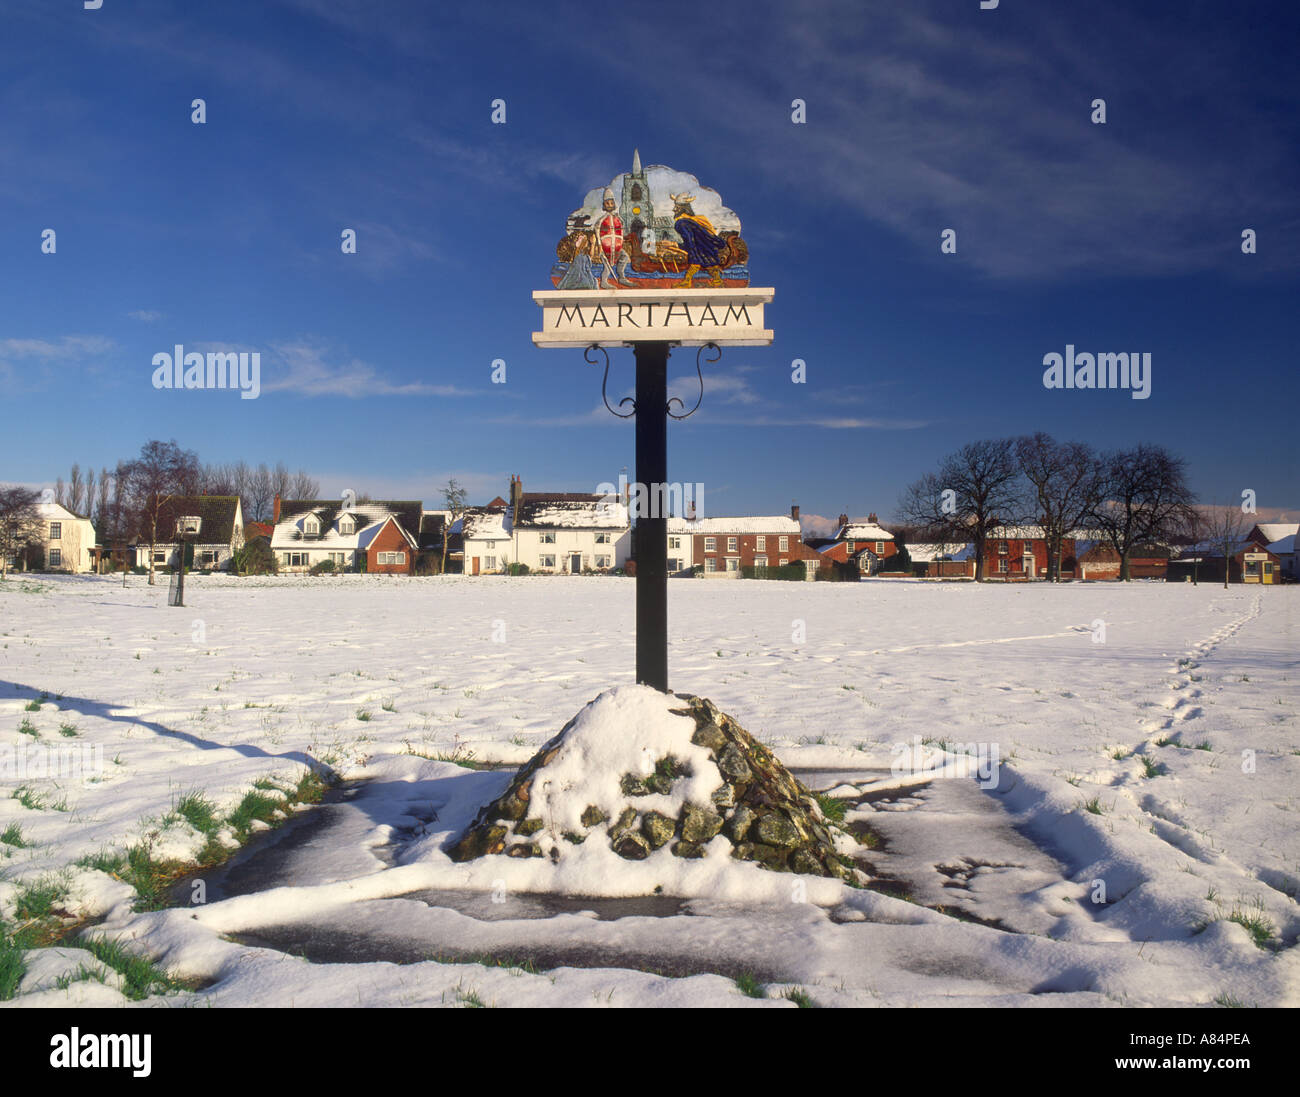 Das Dorf Schild am Martham in der Nähe von Great Yarmouth Norfolk Broads England UK Stockfoto